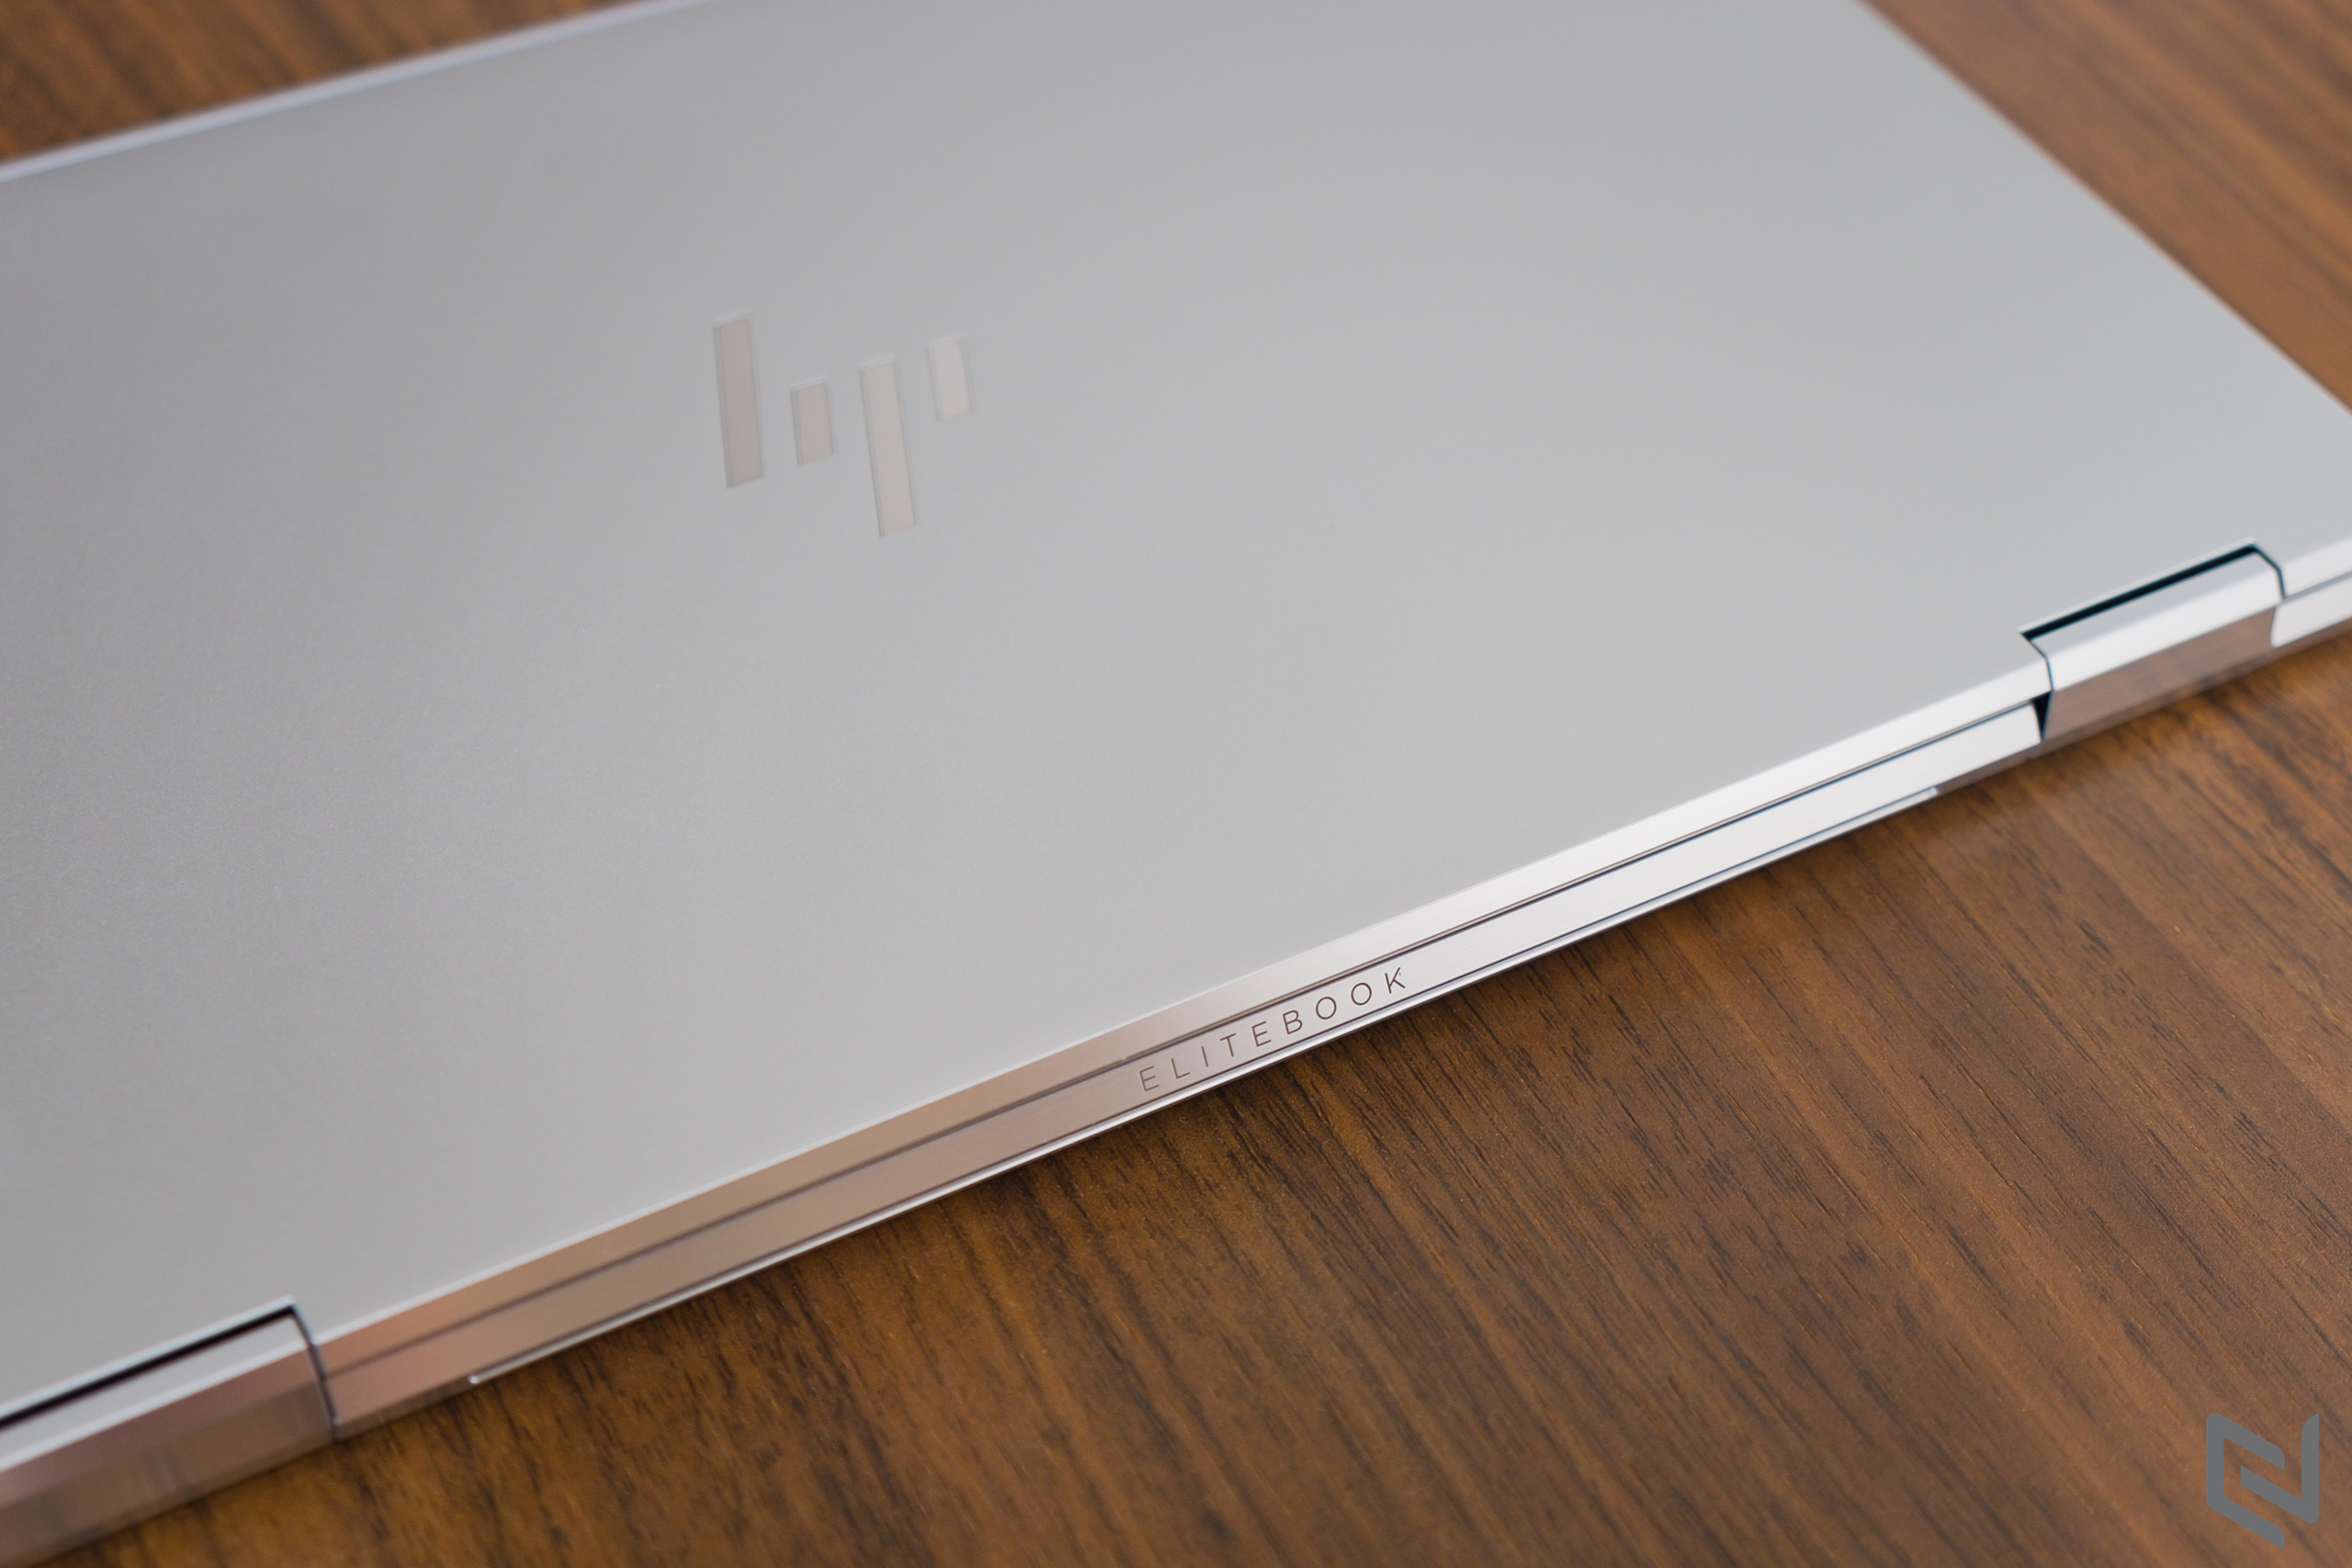 Đánh giá laptop HP EliteBook x360 1030 G8: Thiết kế cao cấp, siêu gọn nhẹ và bảo mật cùng hiệu năng mạnh mẽ